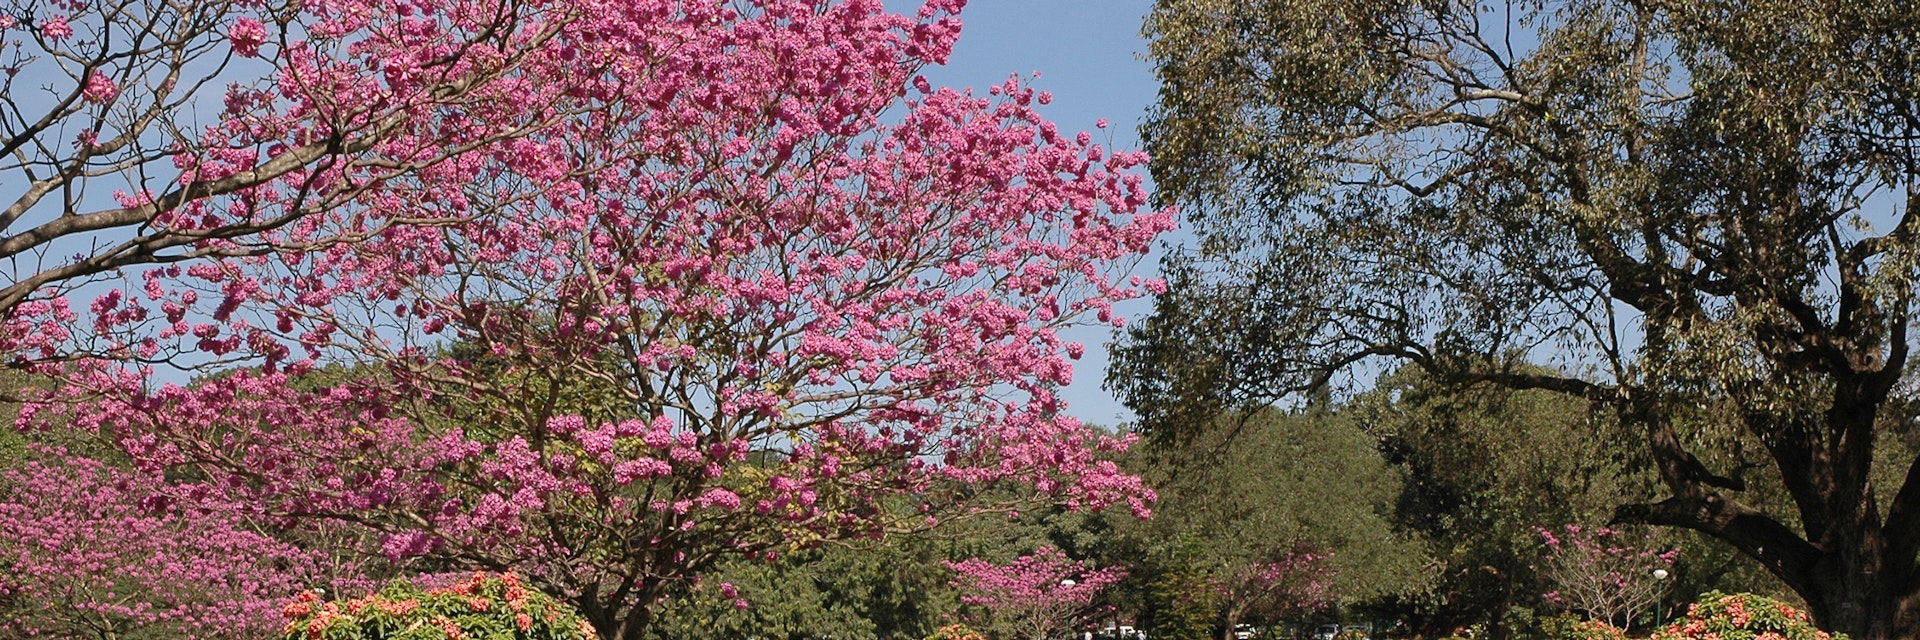 cubbon park, bangalore